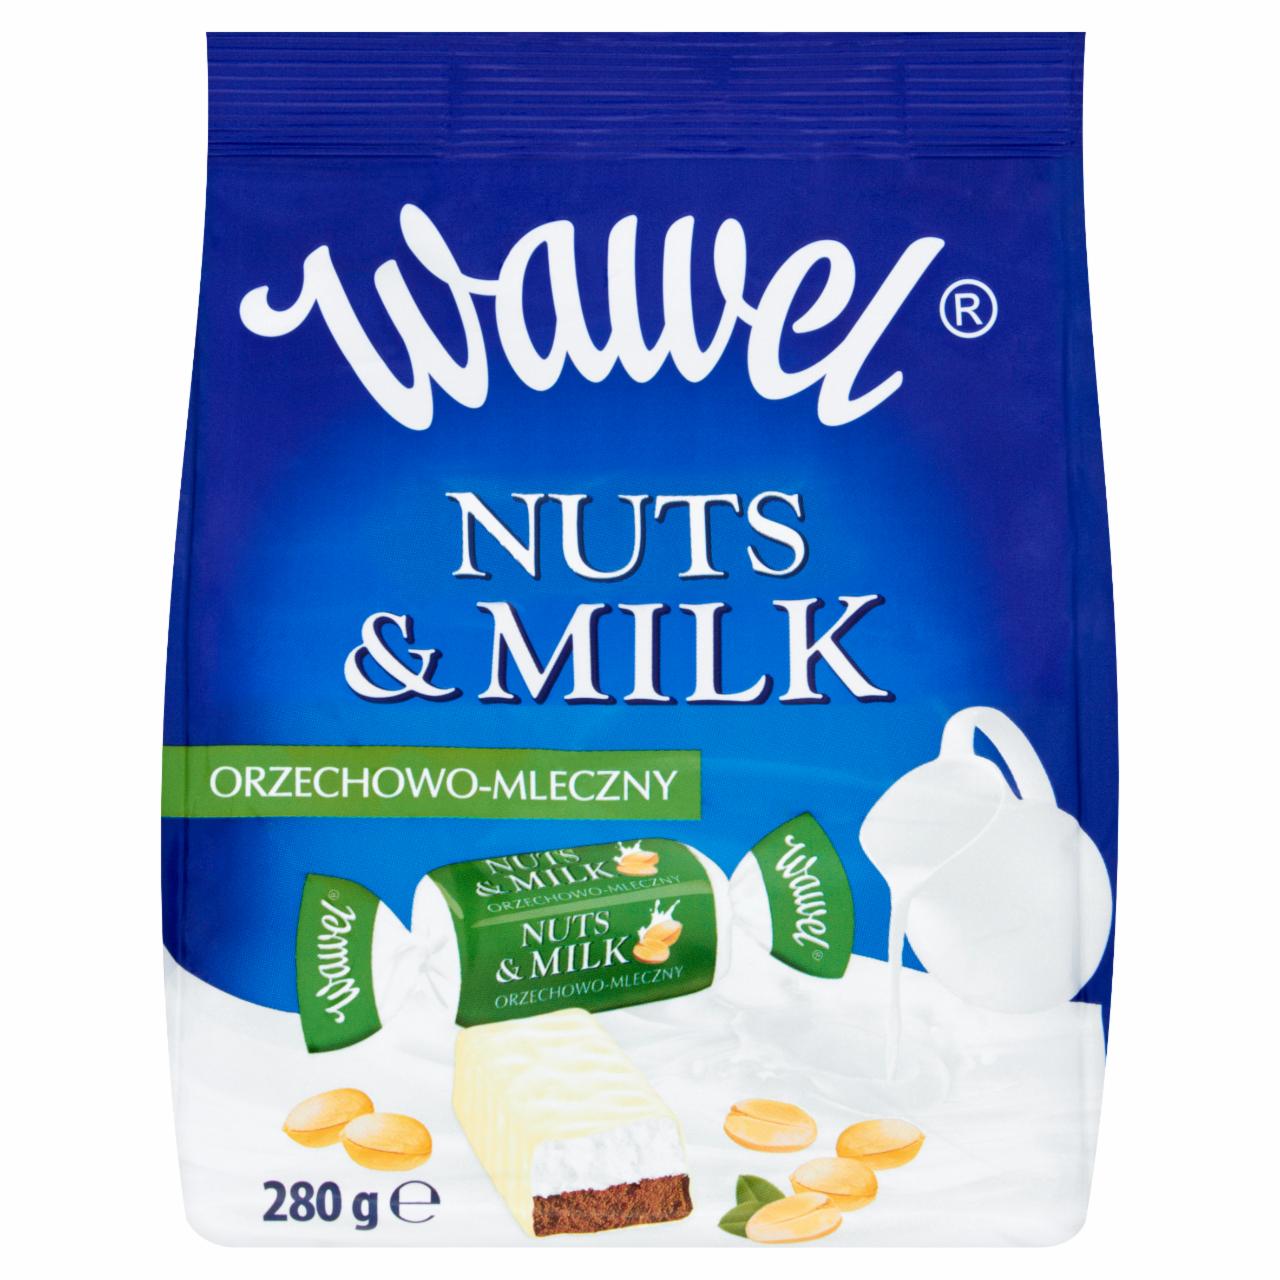 Zdjęcia - Wawel Nuts and Milk orzechowo-mleczny Cukierki w polewie 280 g